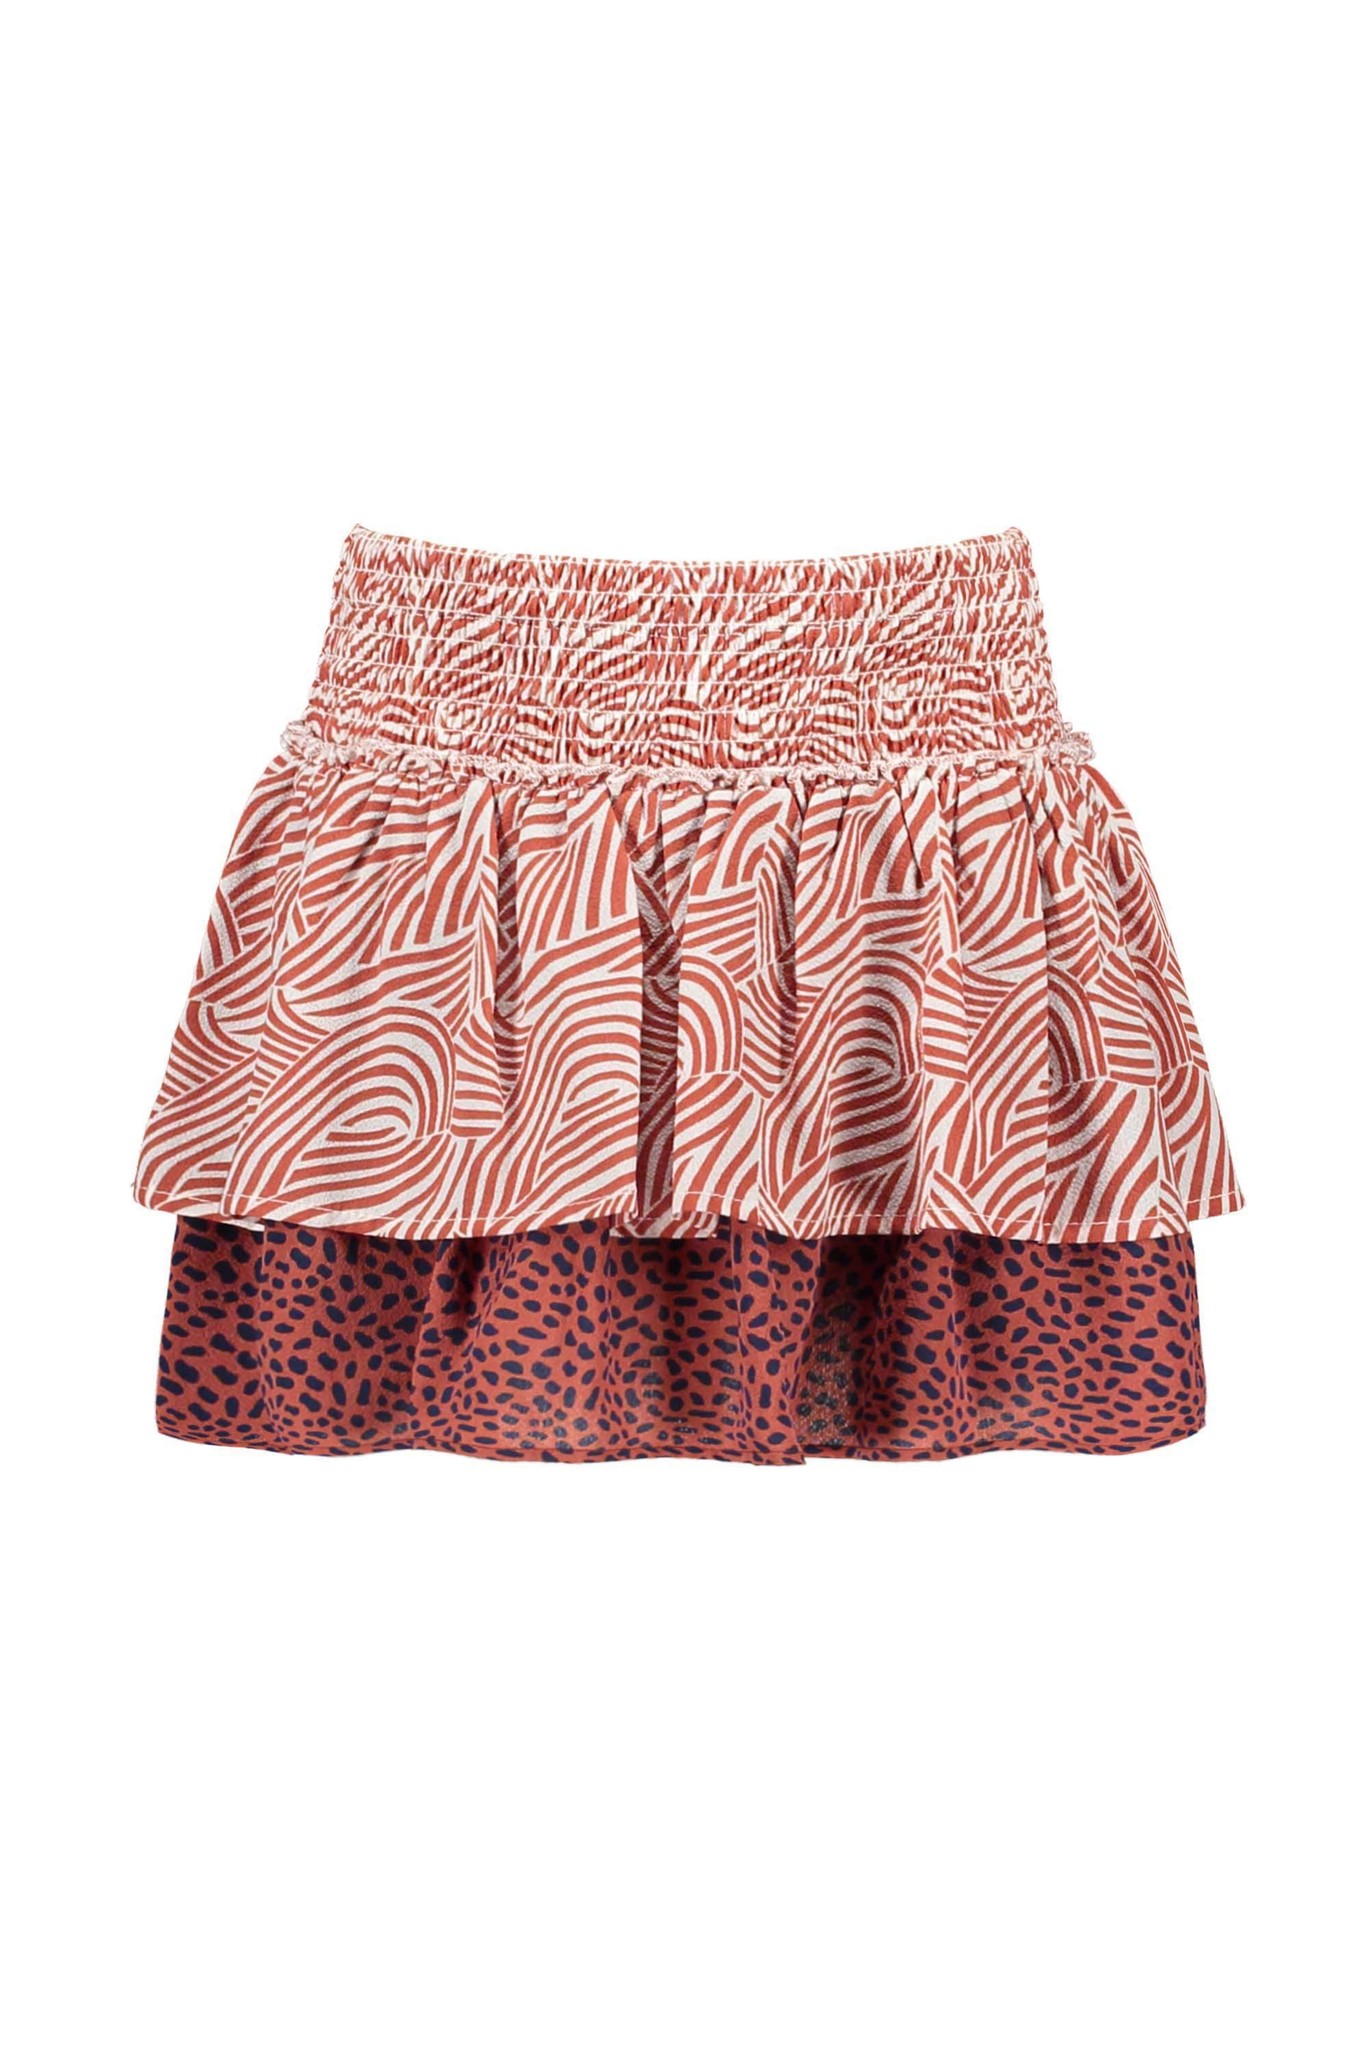 Girls 2-layer mix zebra/mix dots aop skirt